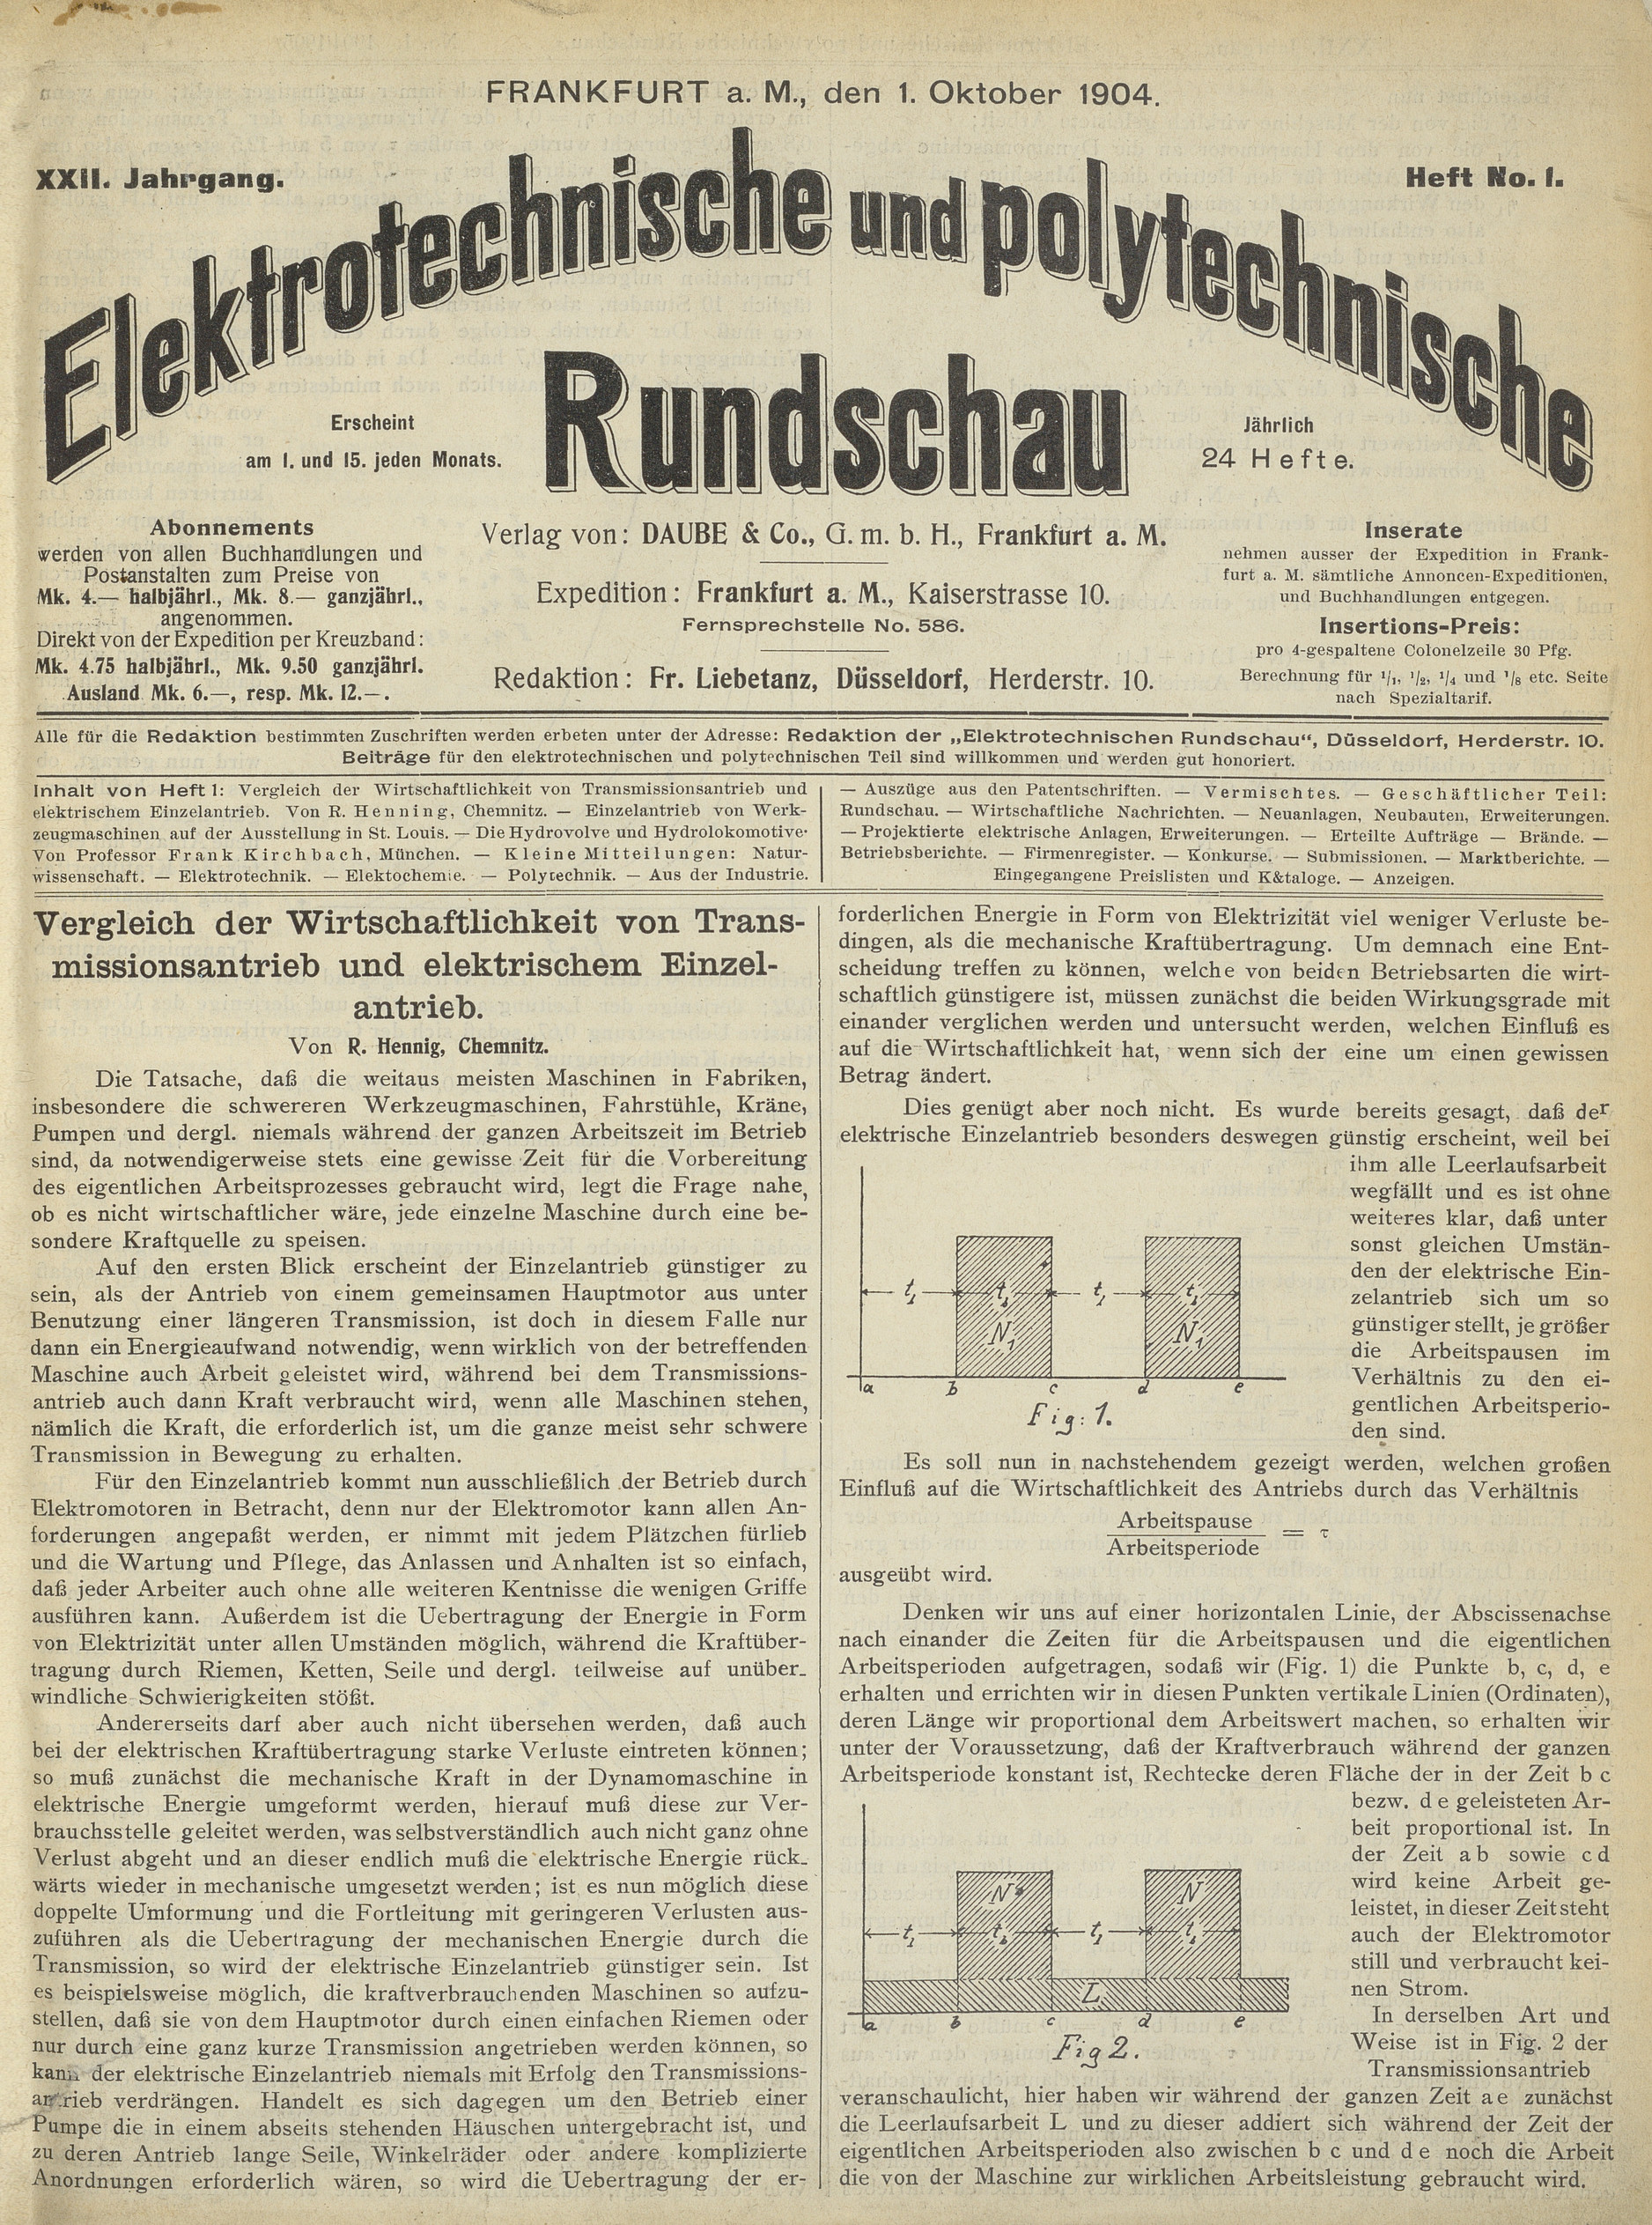 Elektrotechnische und polytechnische Rundschau, XXII. Jahrgang, Heft No. 1